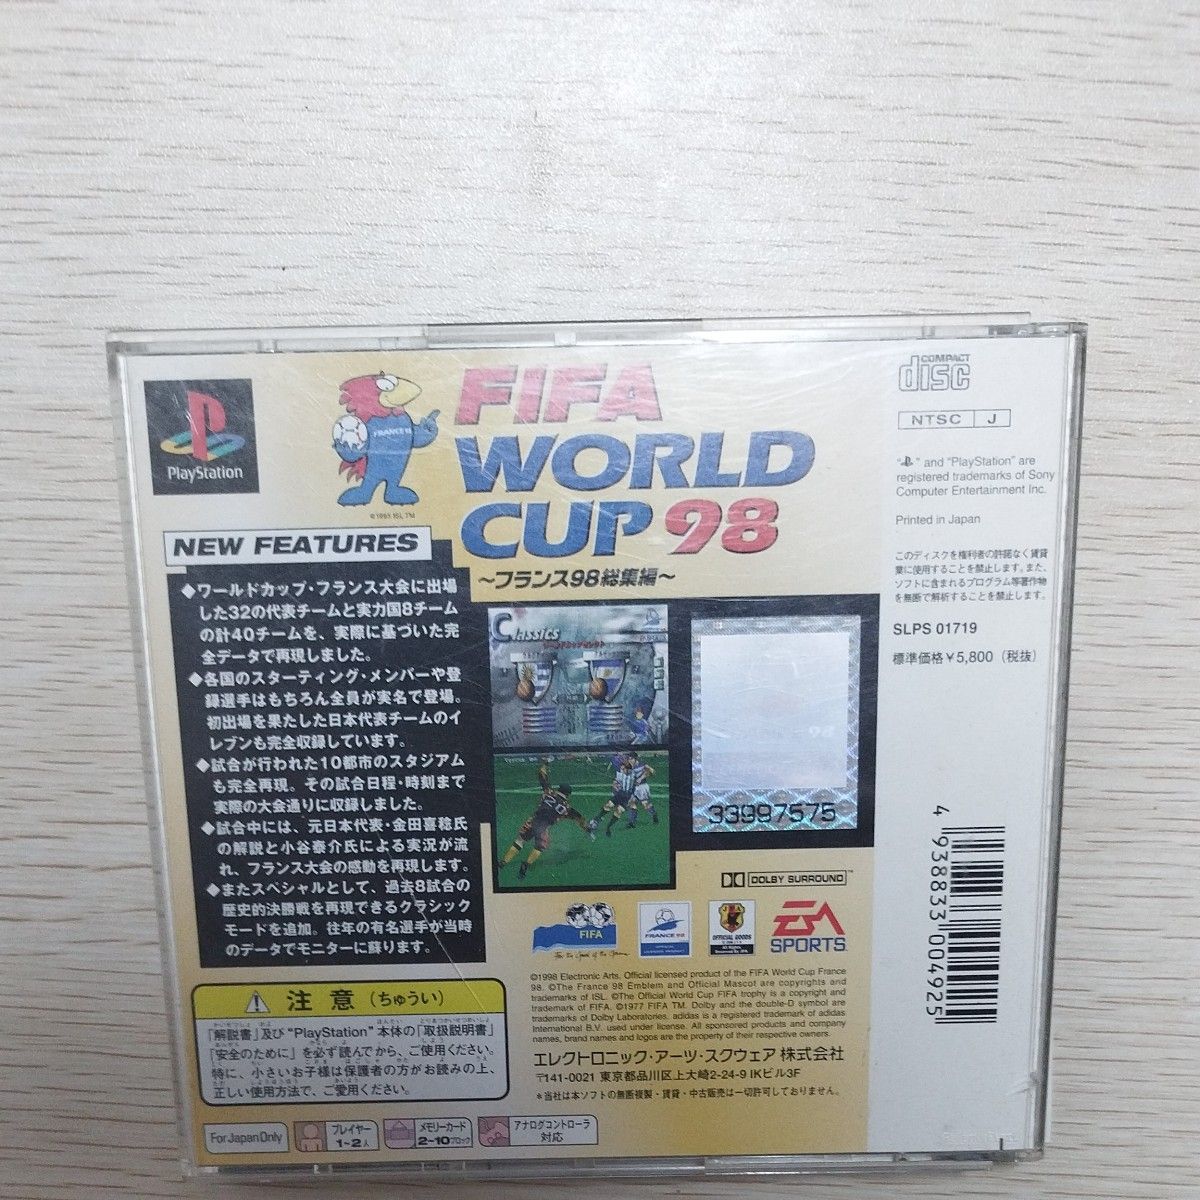 FIFA WORLD CUP 98　フランス98総集編